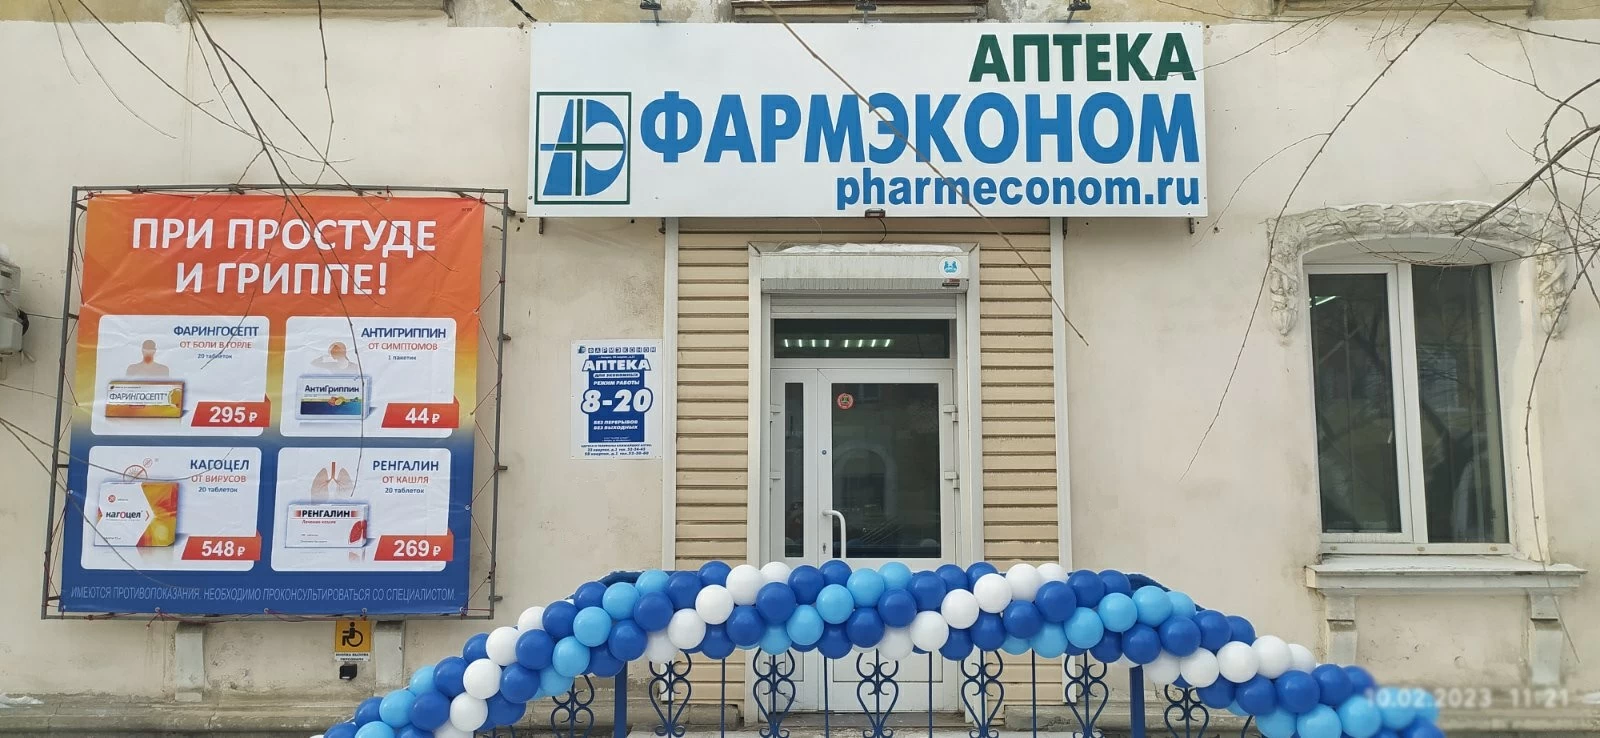 Новая аптека ФАРМЭКОНОМ в Ангарске!